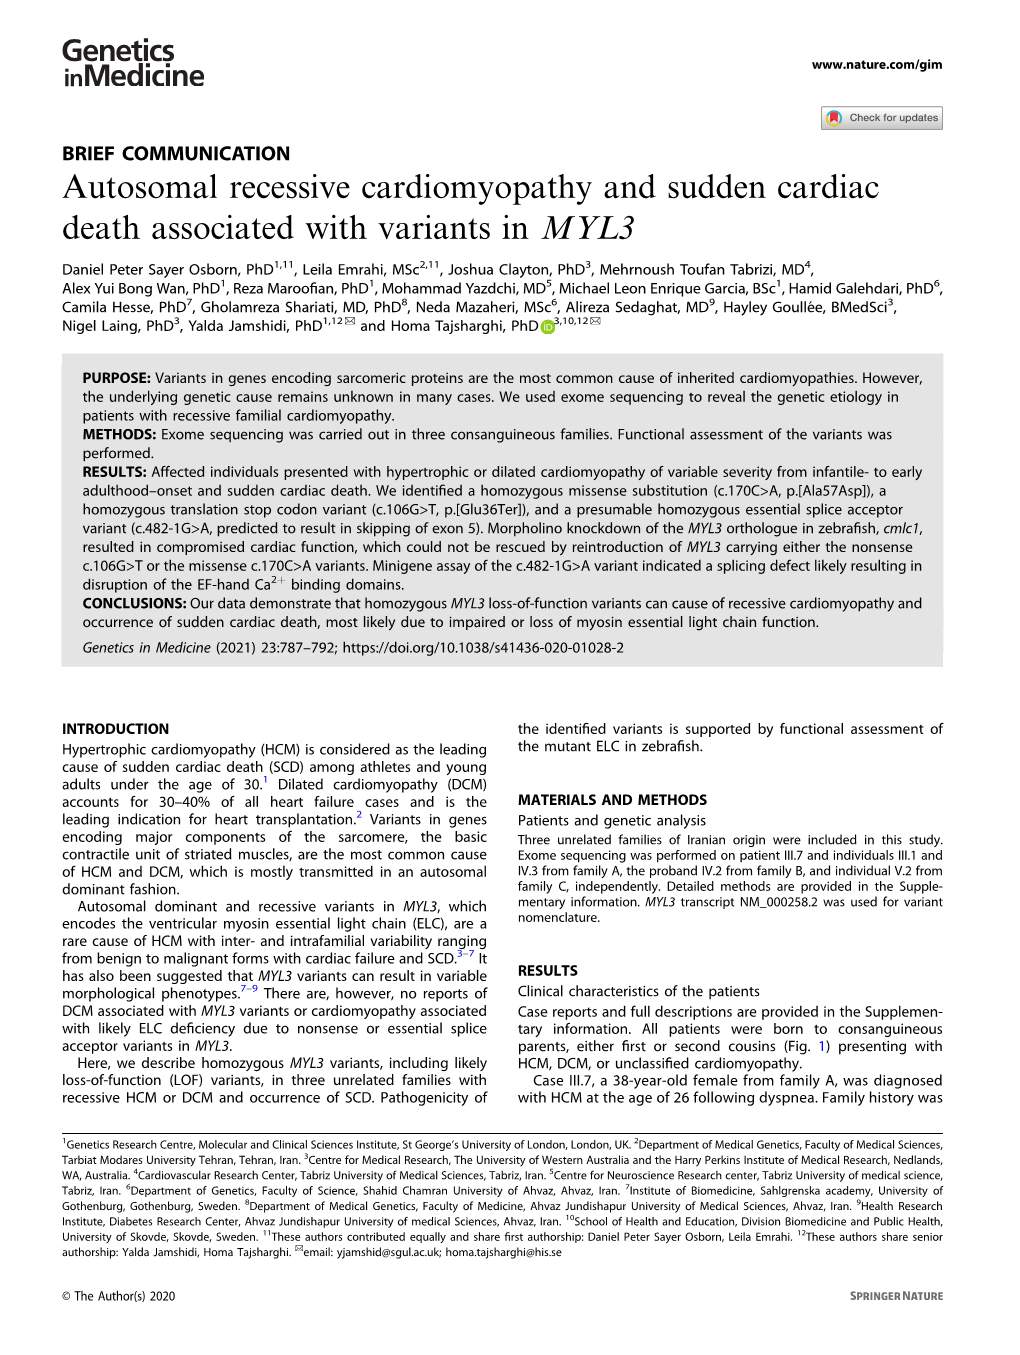 Autosomal Recessive Cardiomyopathy and Sudden Cardiac Death Associated with Variants in MYL3